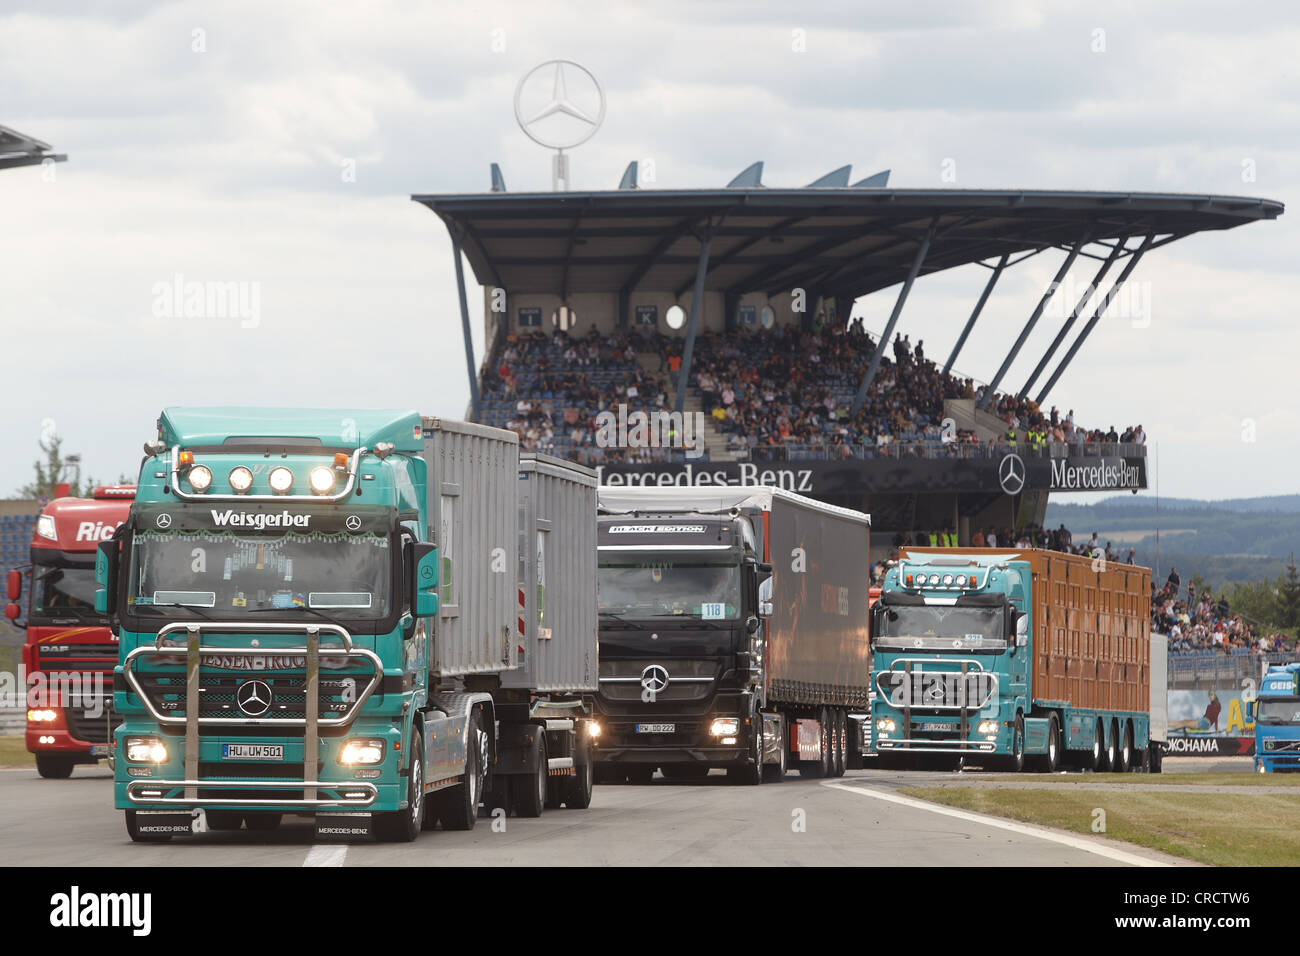 Parade der Oldtimer LKW an der Truck-Grand-Prix, Nürburgring Rennstrecke, Rheinland-Pfalz, Deutschland, Europa Stockfoto